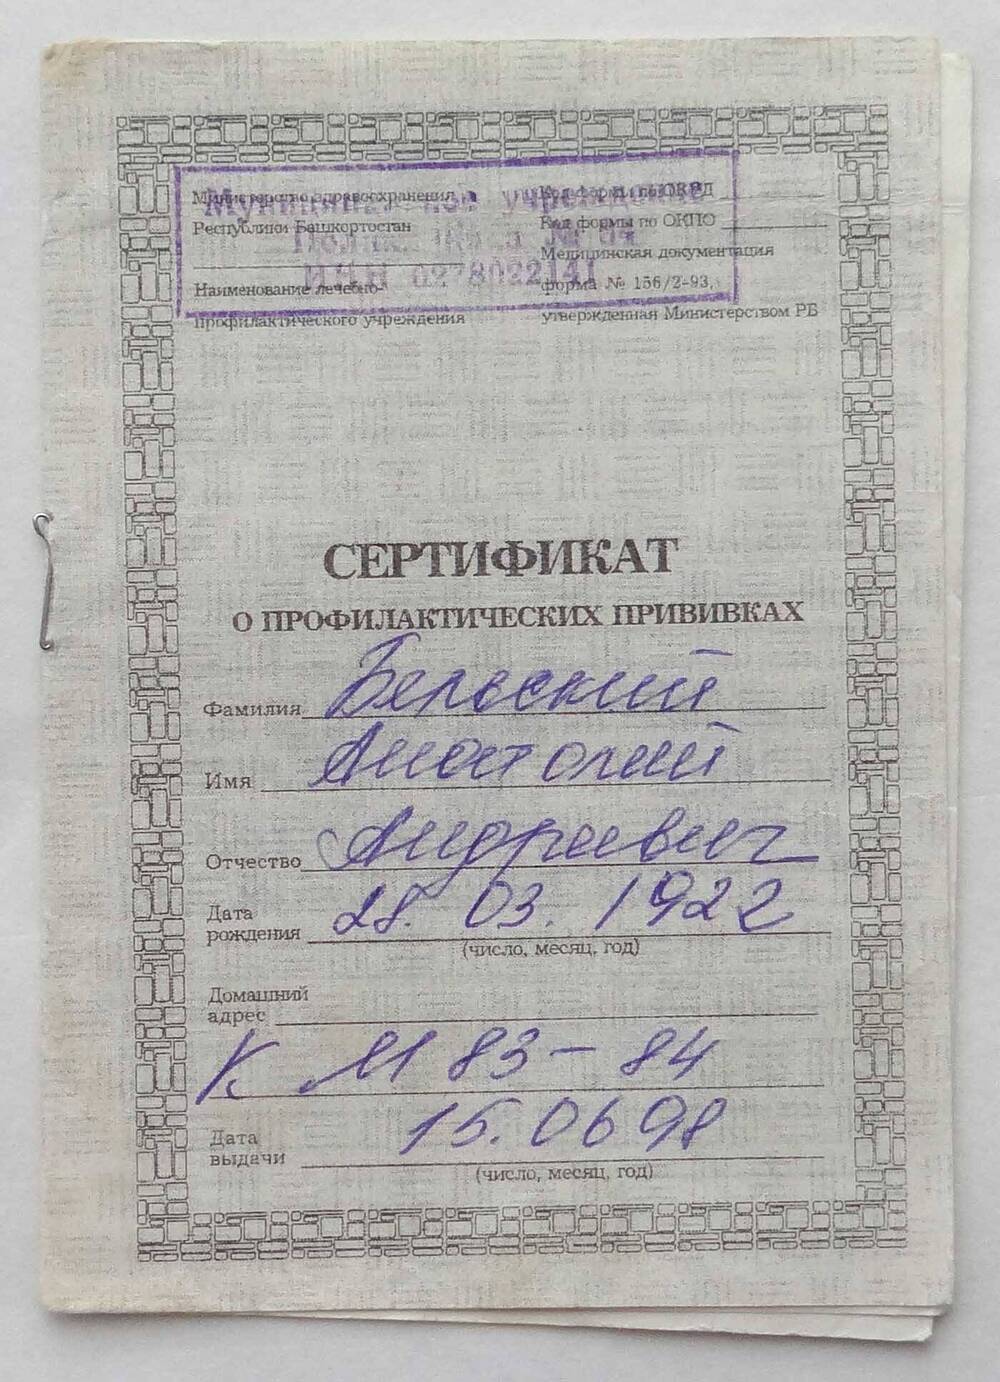 Сертификат о профилактических прививках А.А. Бельского, 1922 г.р.